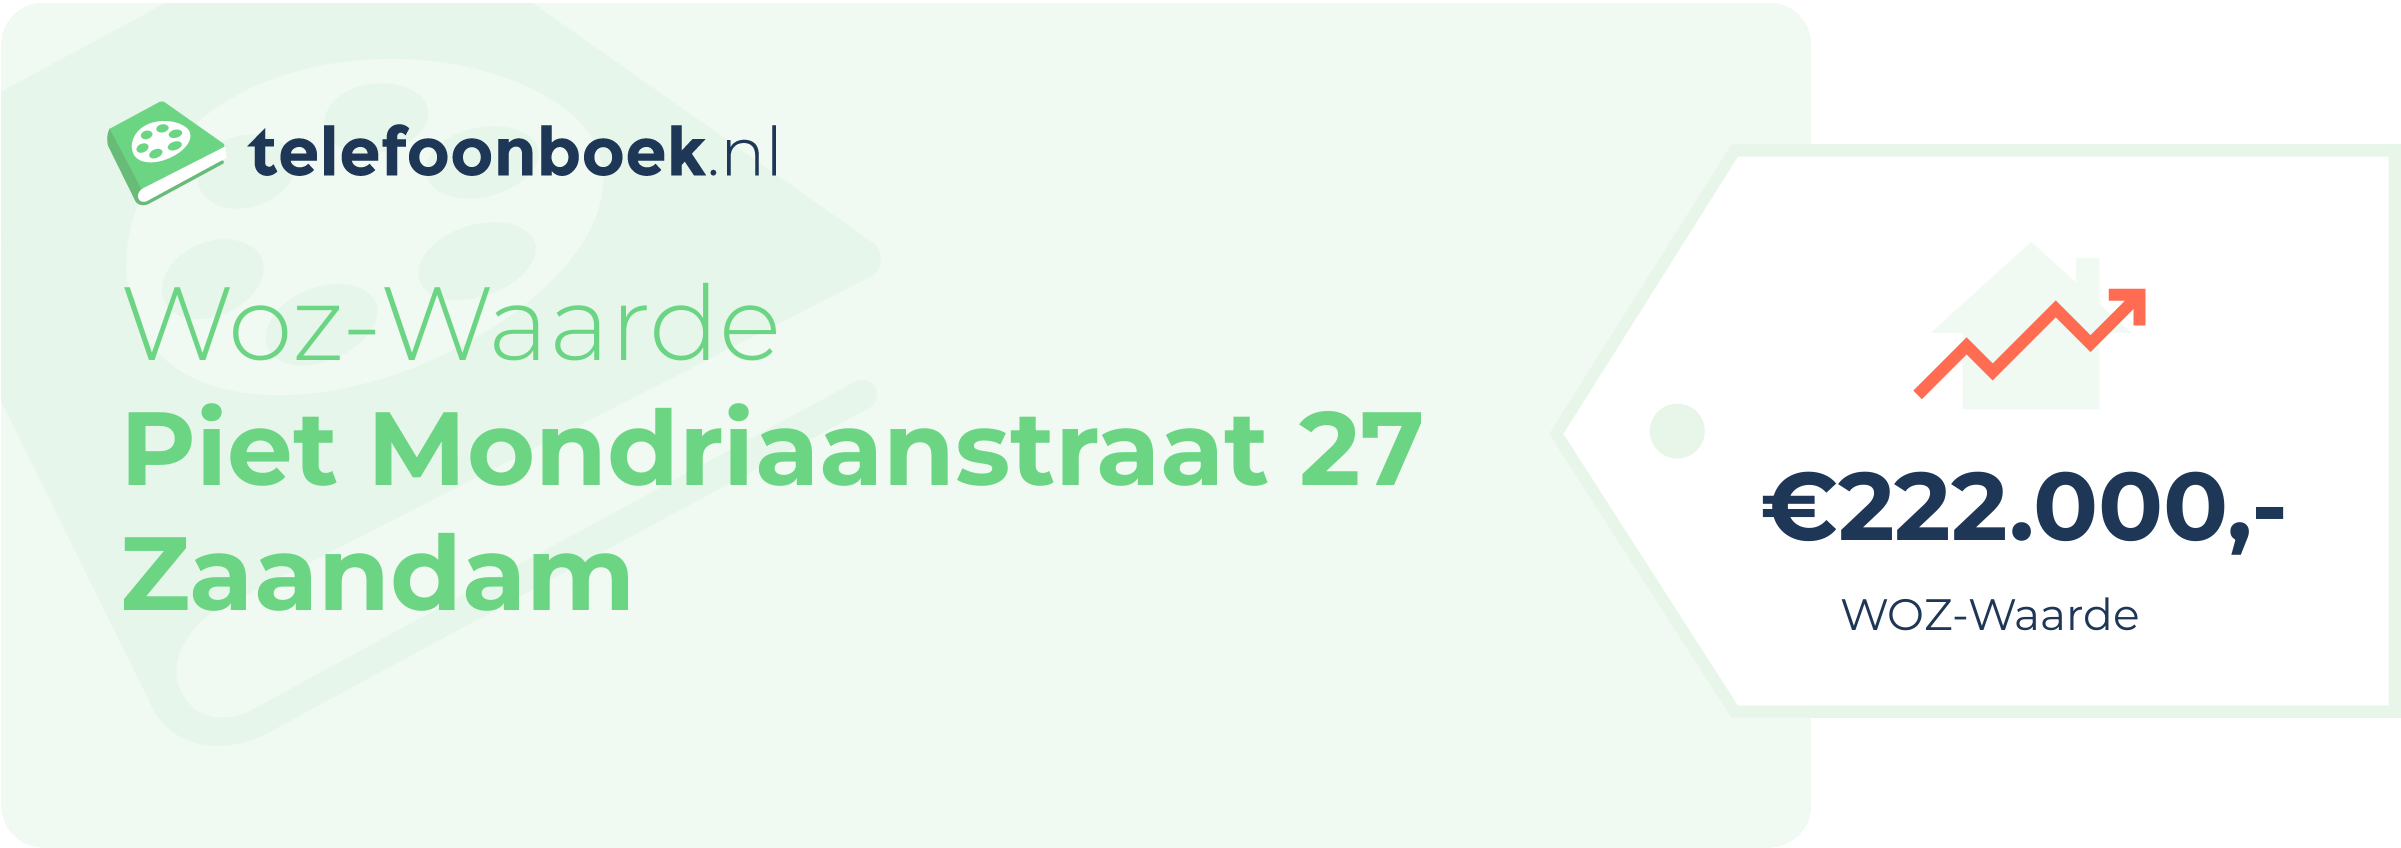 WOZ-waarde Piet Mondriaanstraat 27 Zaandam